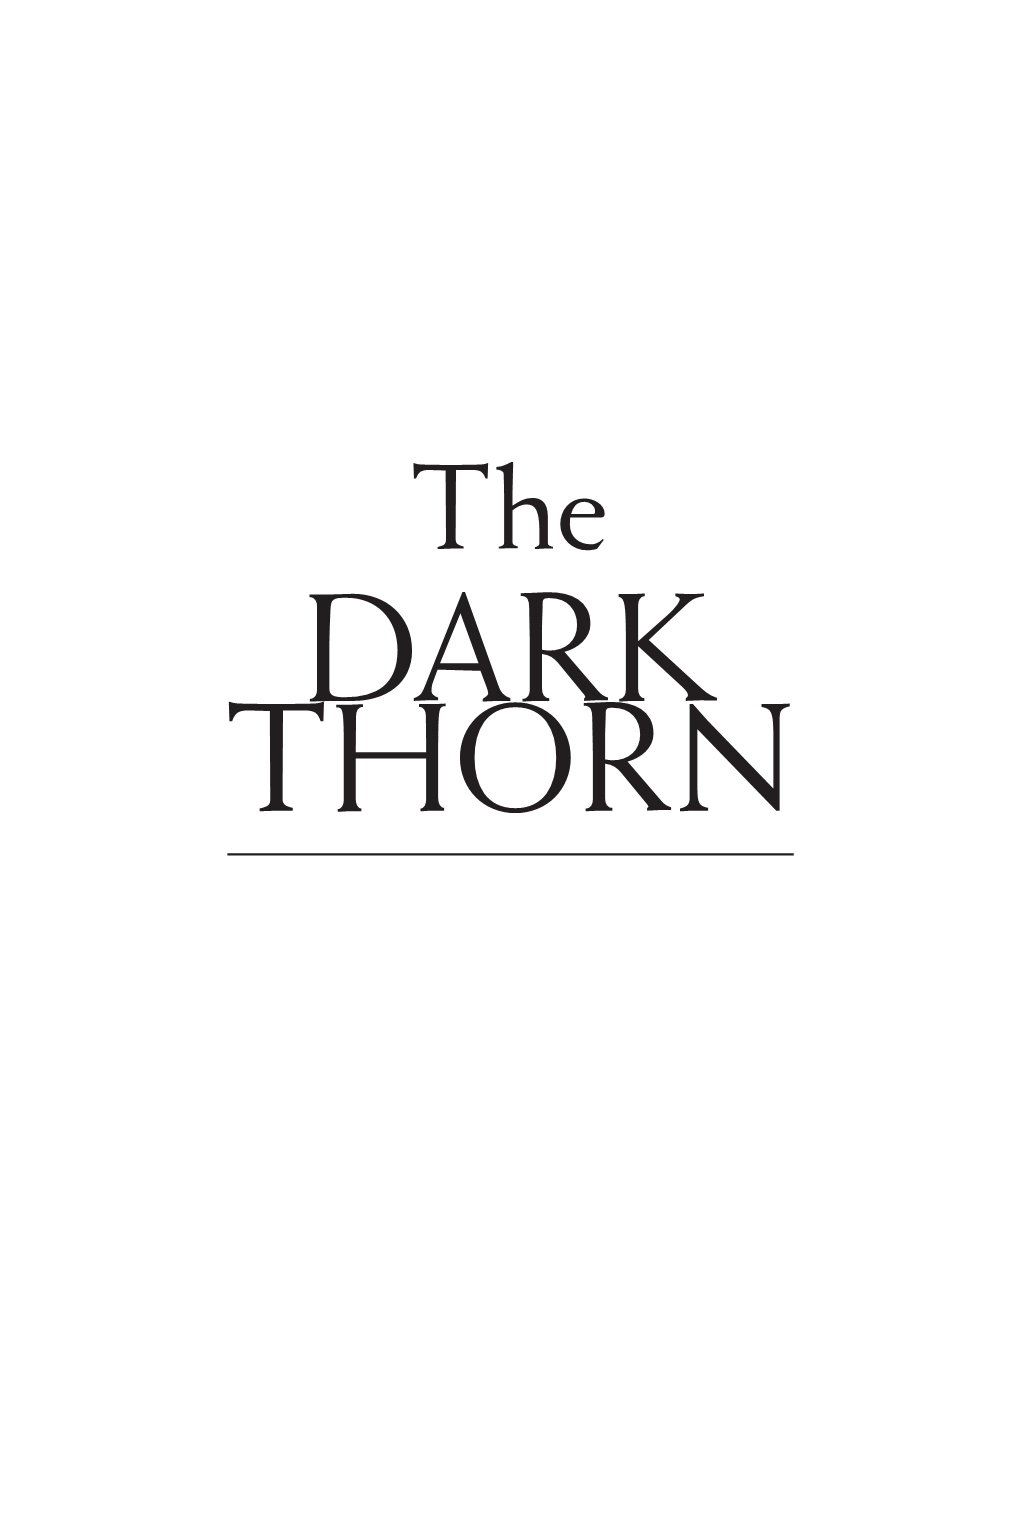 Dark Thorn by Shawn Speakman